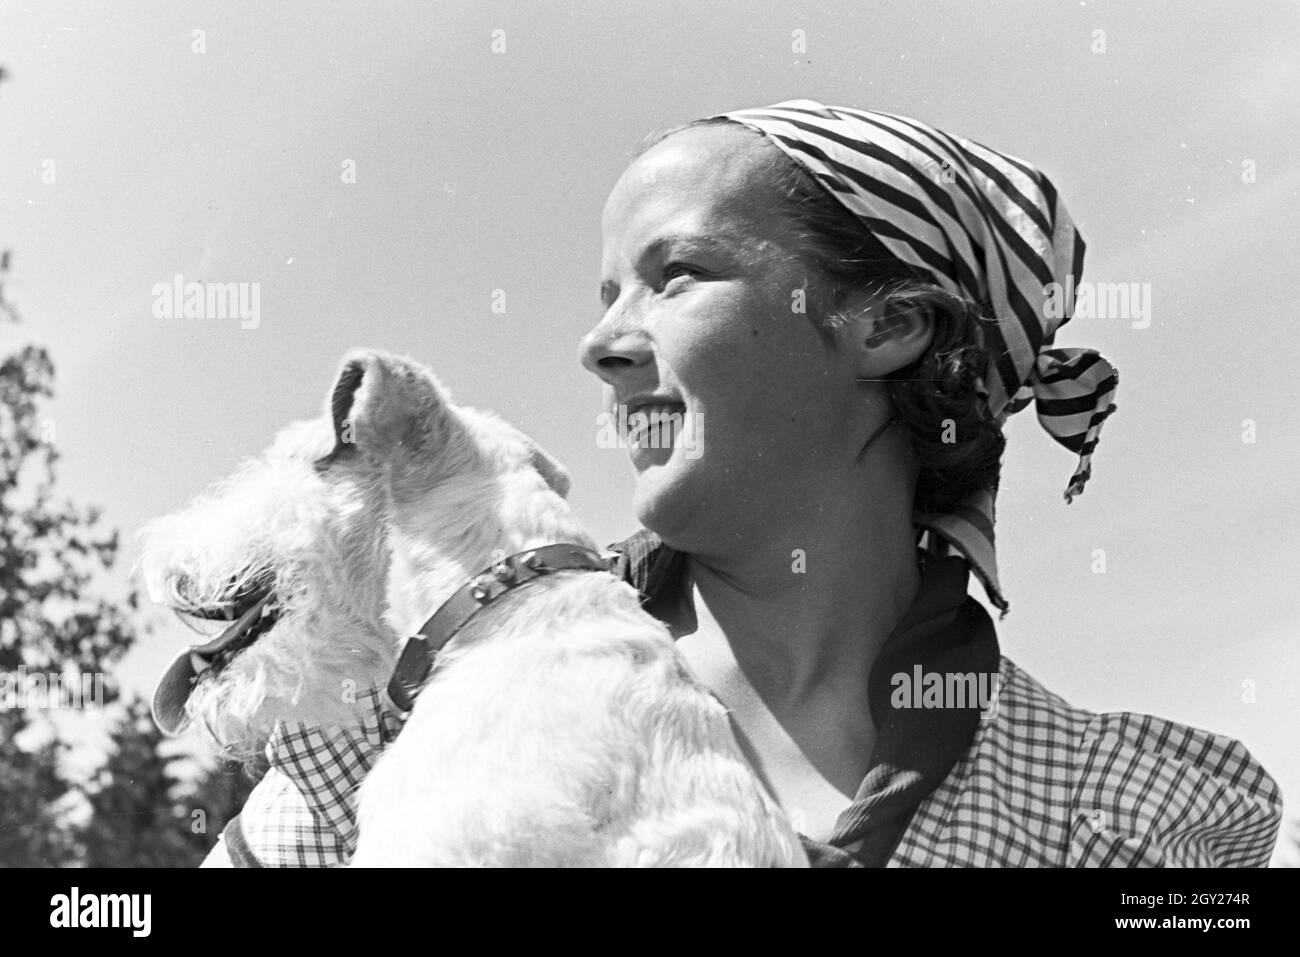 Porträt einer jungen Frau mit einem Terrier auf einer Blumenwiese, Freudenstadt, Deutschland 1930 er Jahre. Portrait d'une jeune femme avec un terrier sur un champ de fleur, Freudenstadt, Allemagne 1930. Banque D'Images